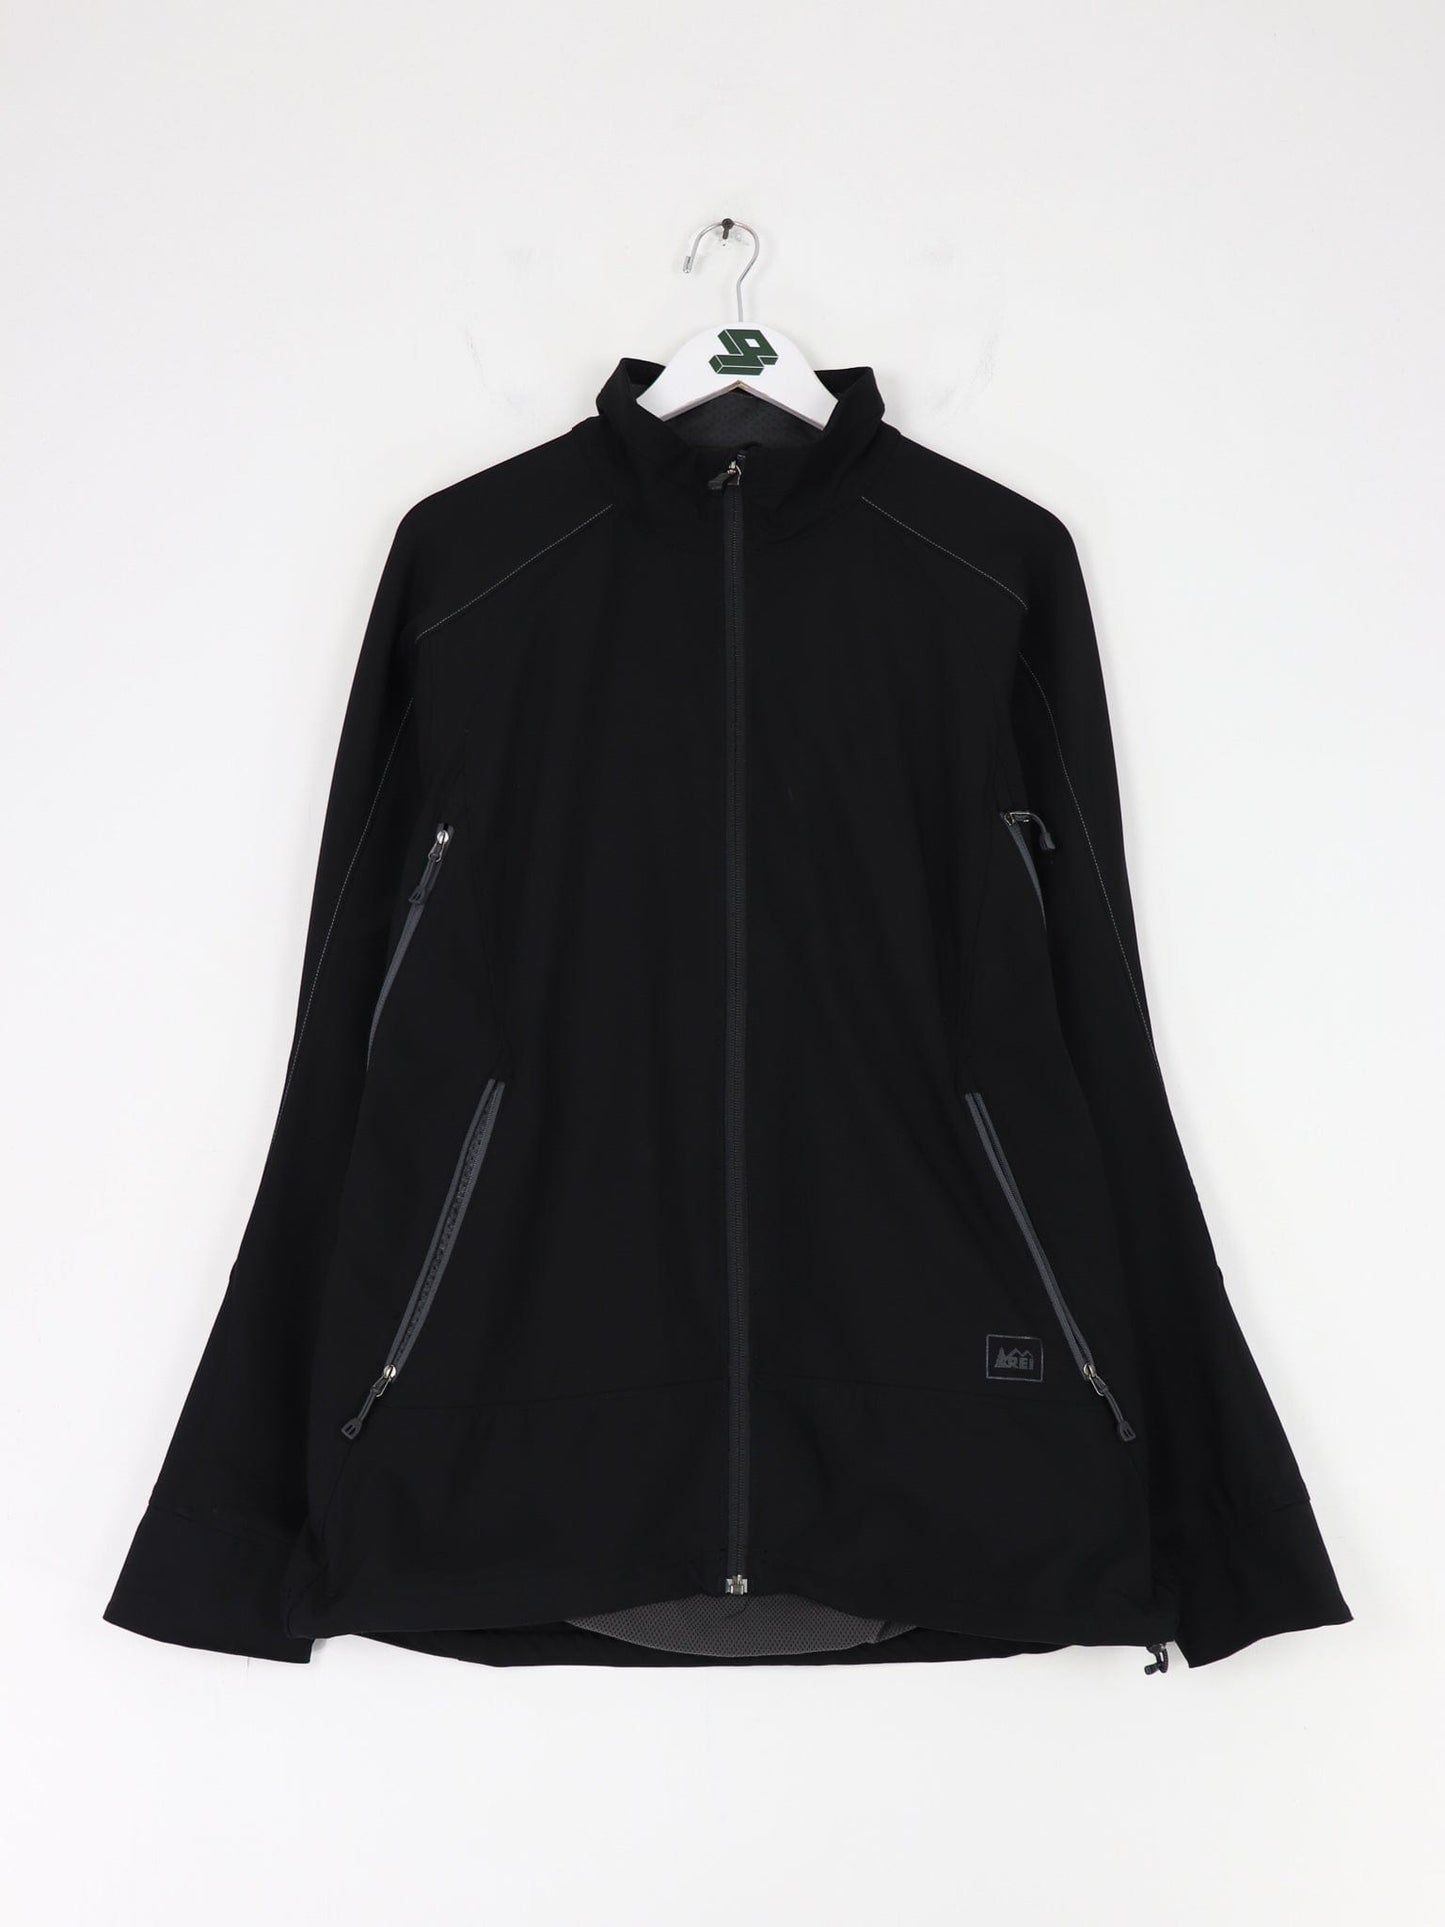 REI Jackets & Coats REI Jacket Fits Men's Medium Black Outdoor Lightweight Coat